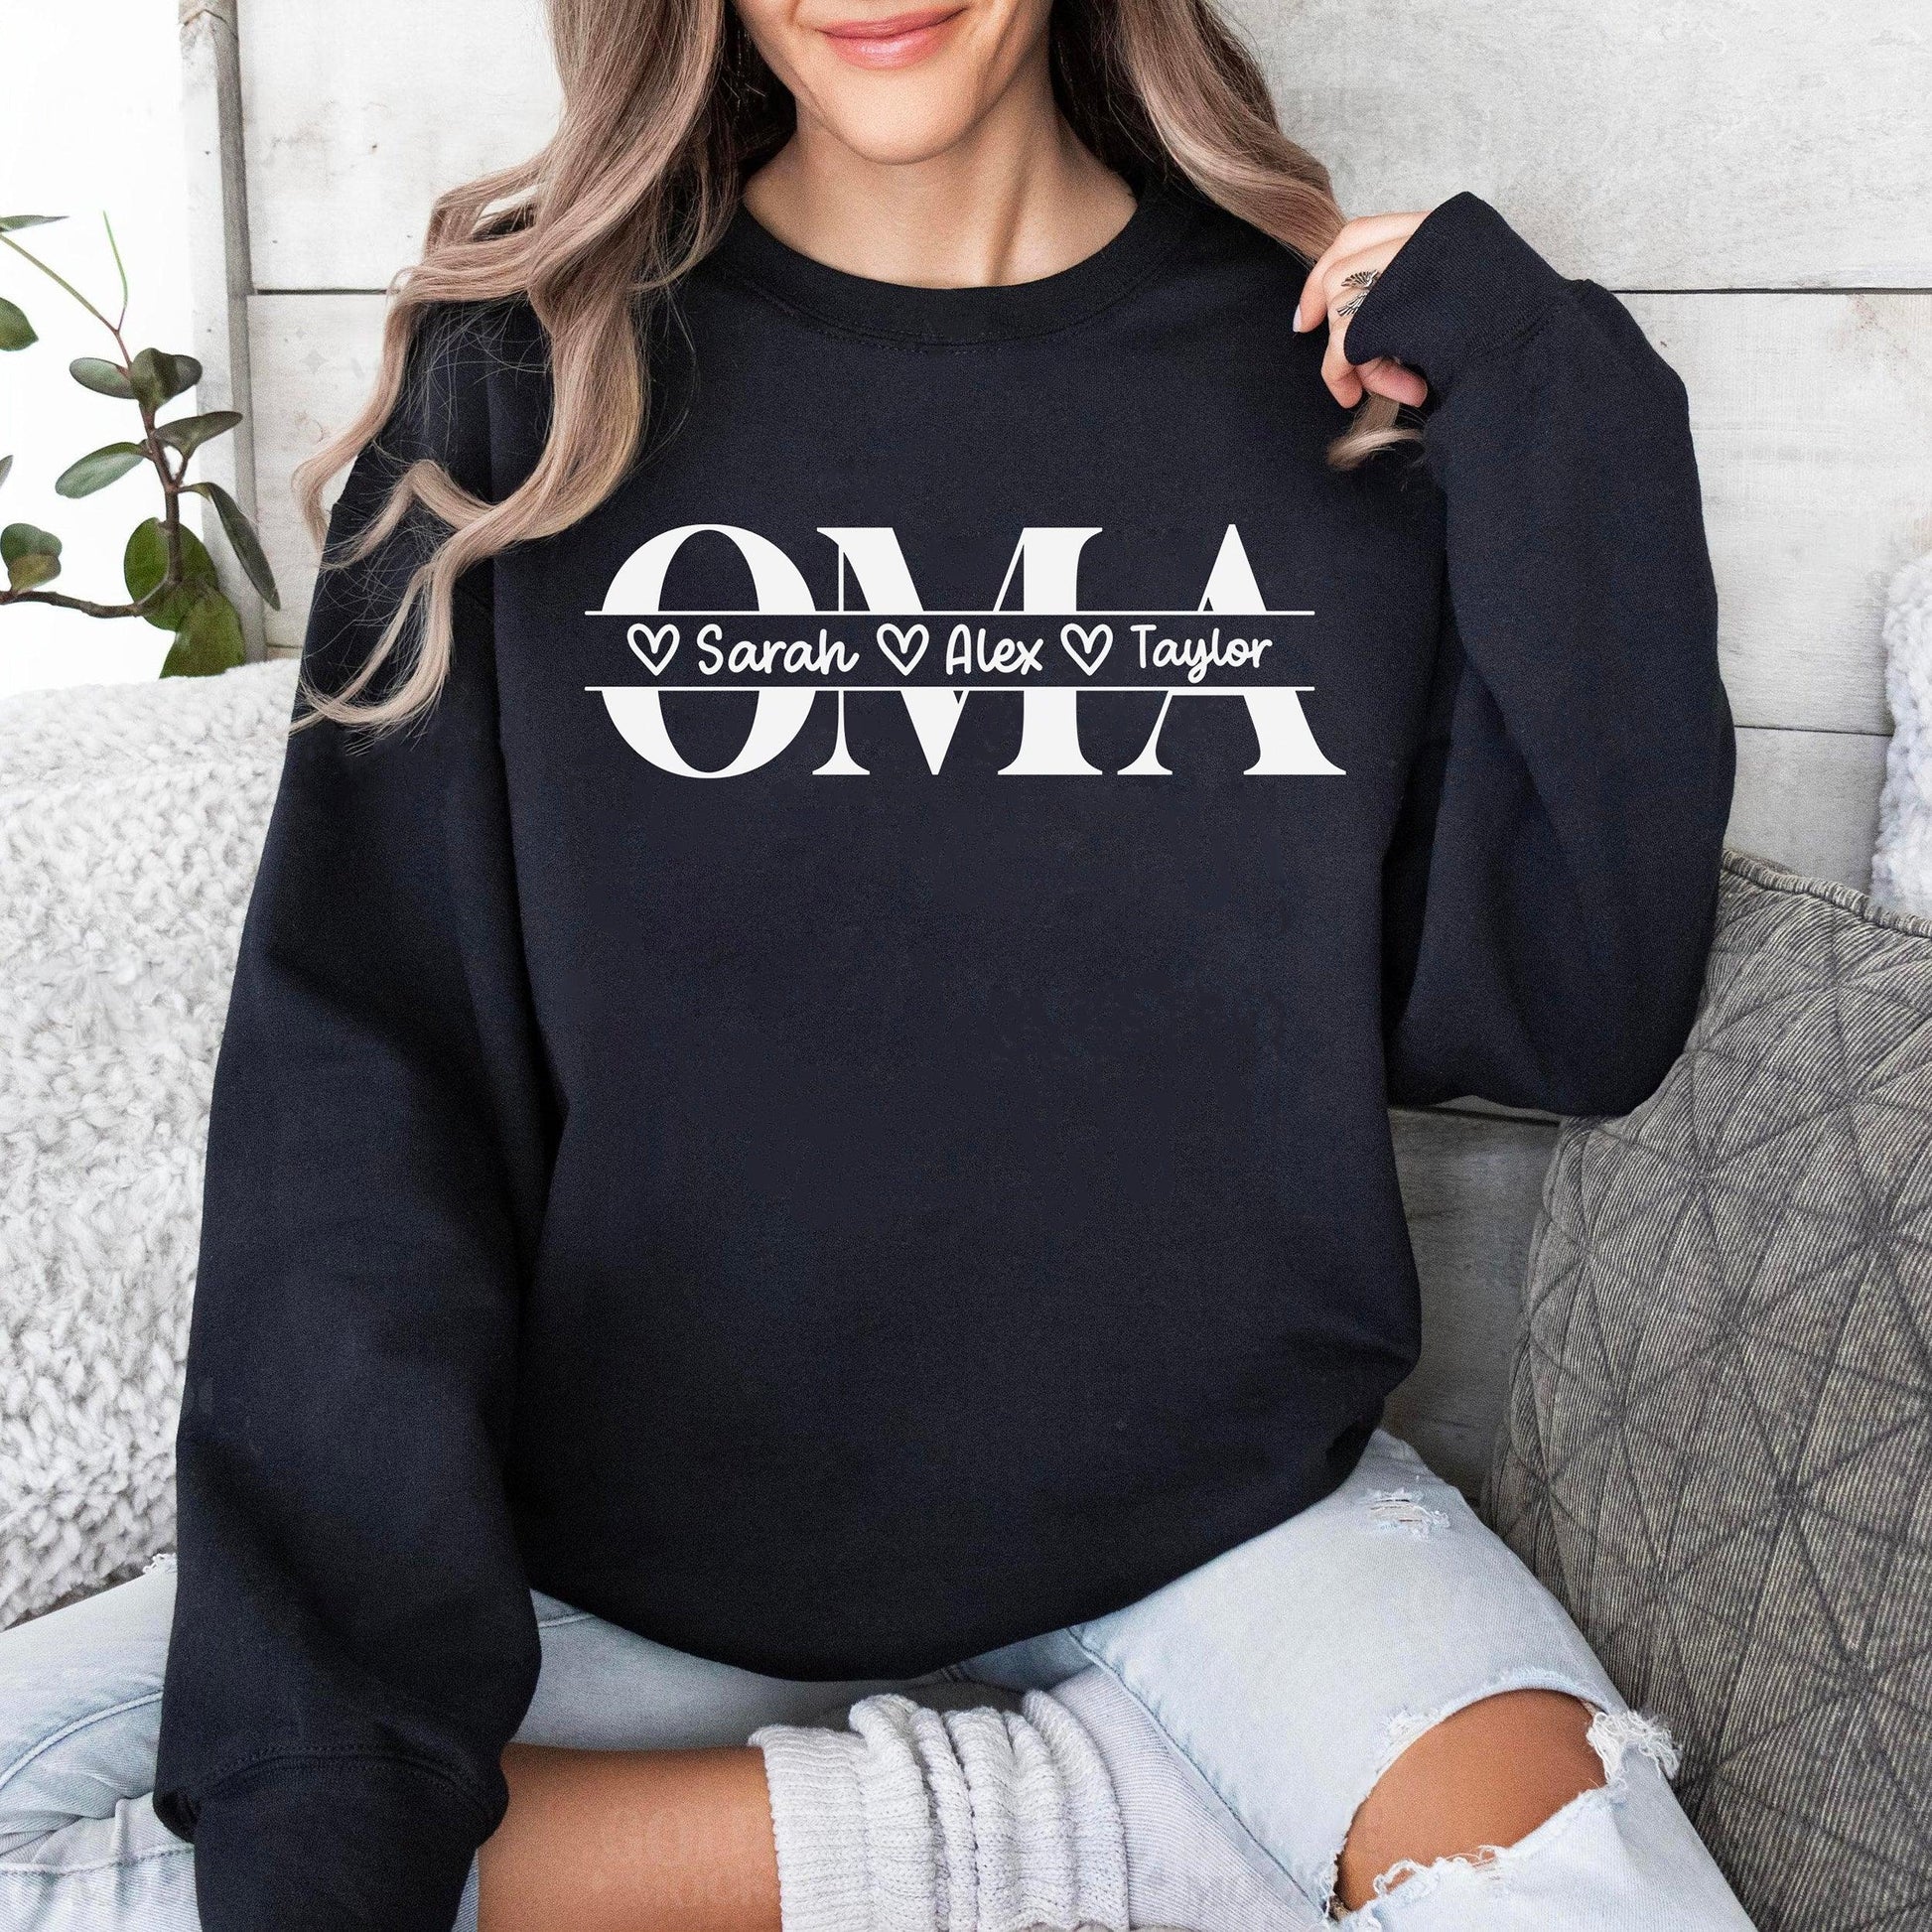 Personalisiertes Oma Sweatshirt - Geschenk für Oma - GiftHaus